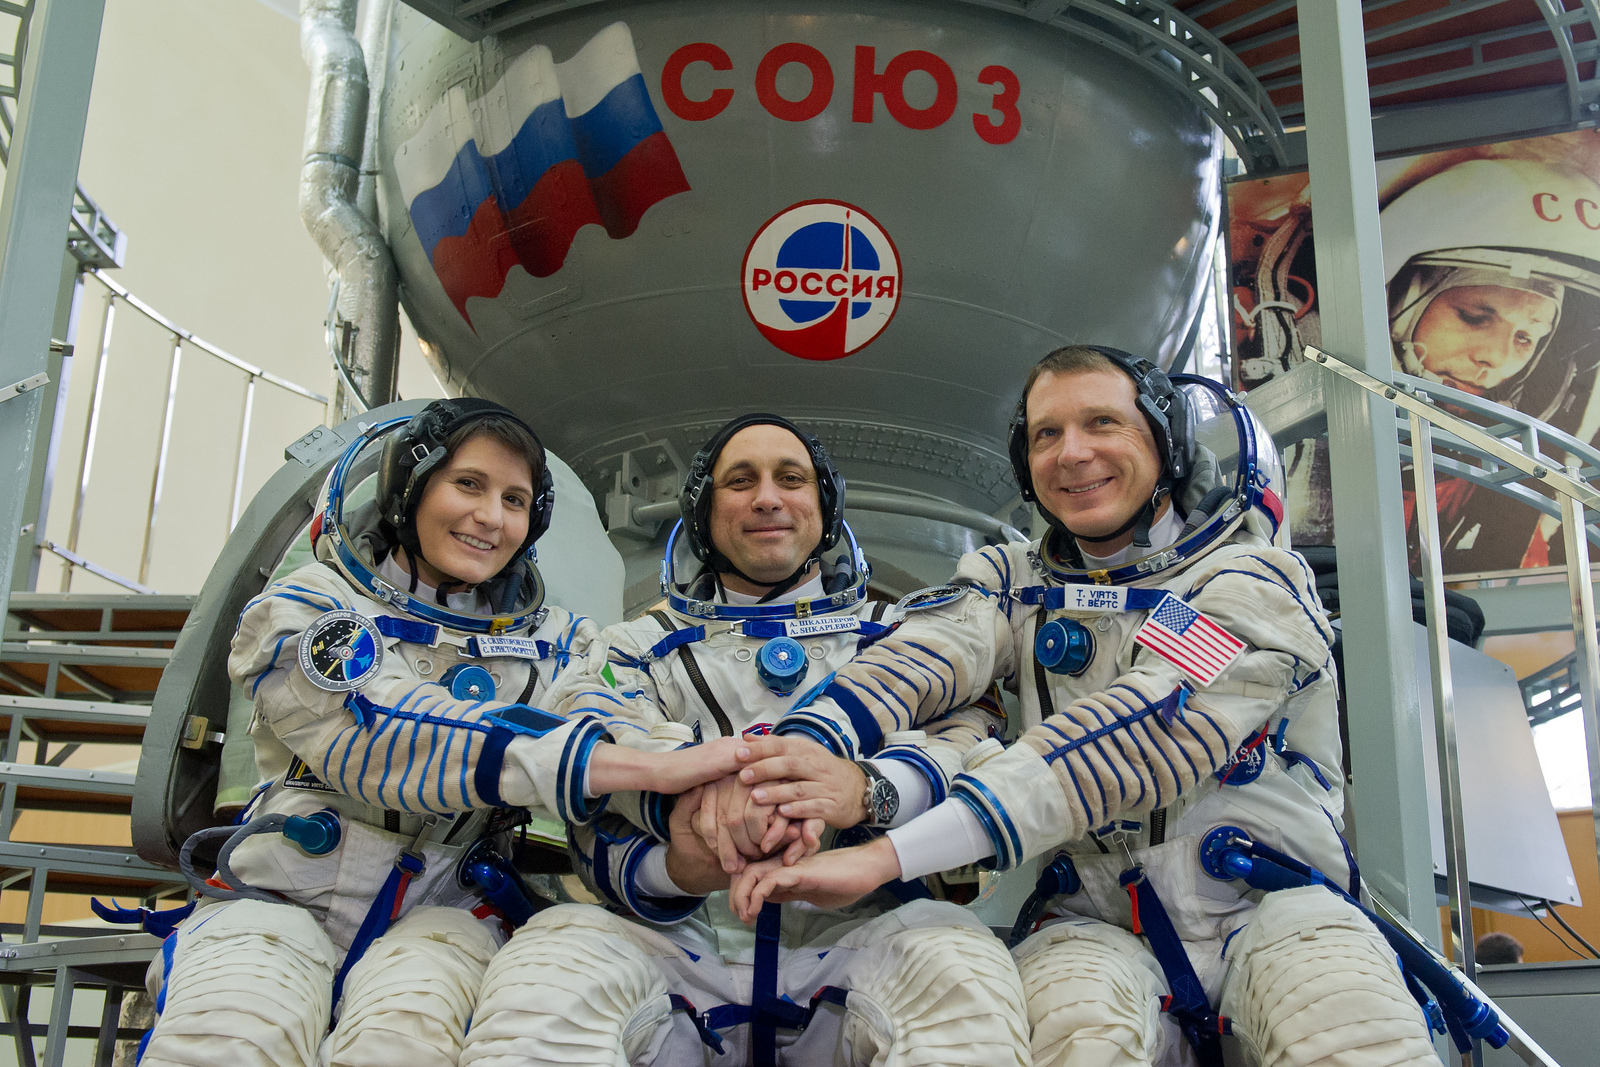 L'equipaggio della Soyuz TMA-15M prima dell'esame finale Soyuz a Star City. Credit: GCTC